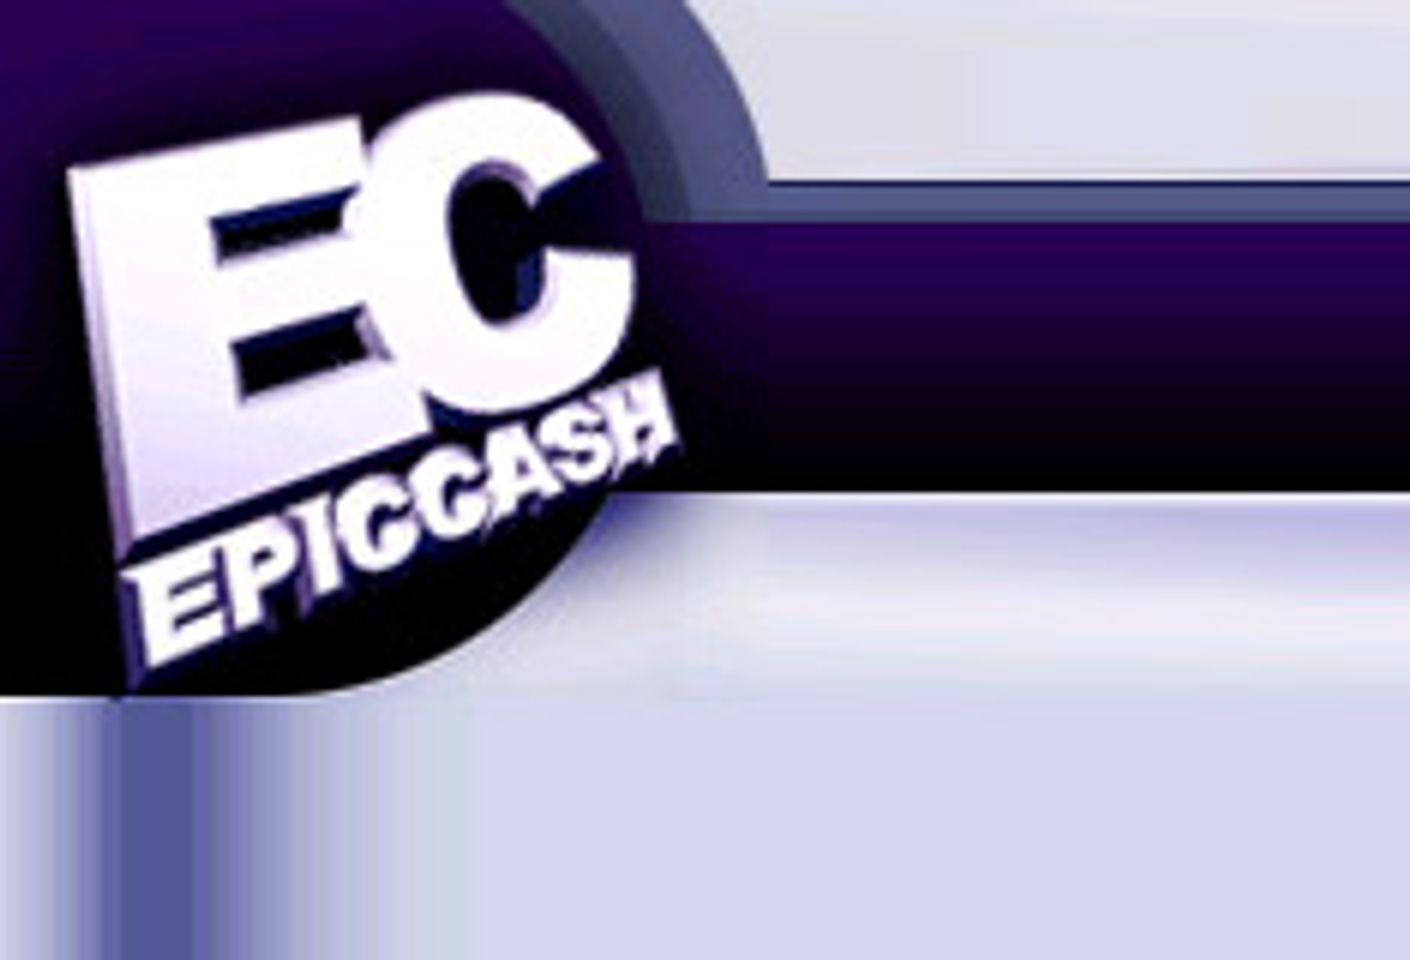 EpicCash Announces Pre-Thanksgiving Special